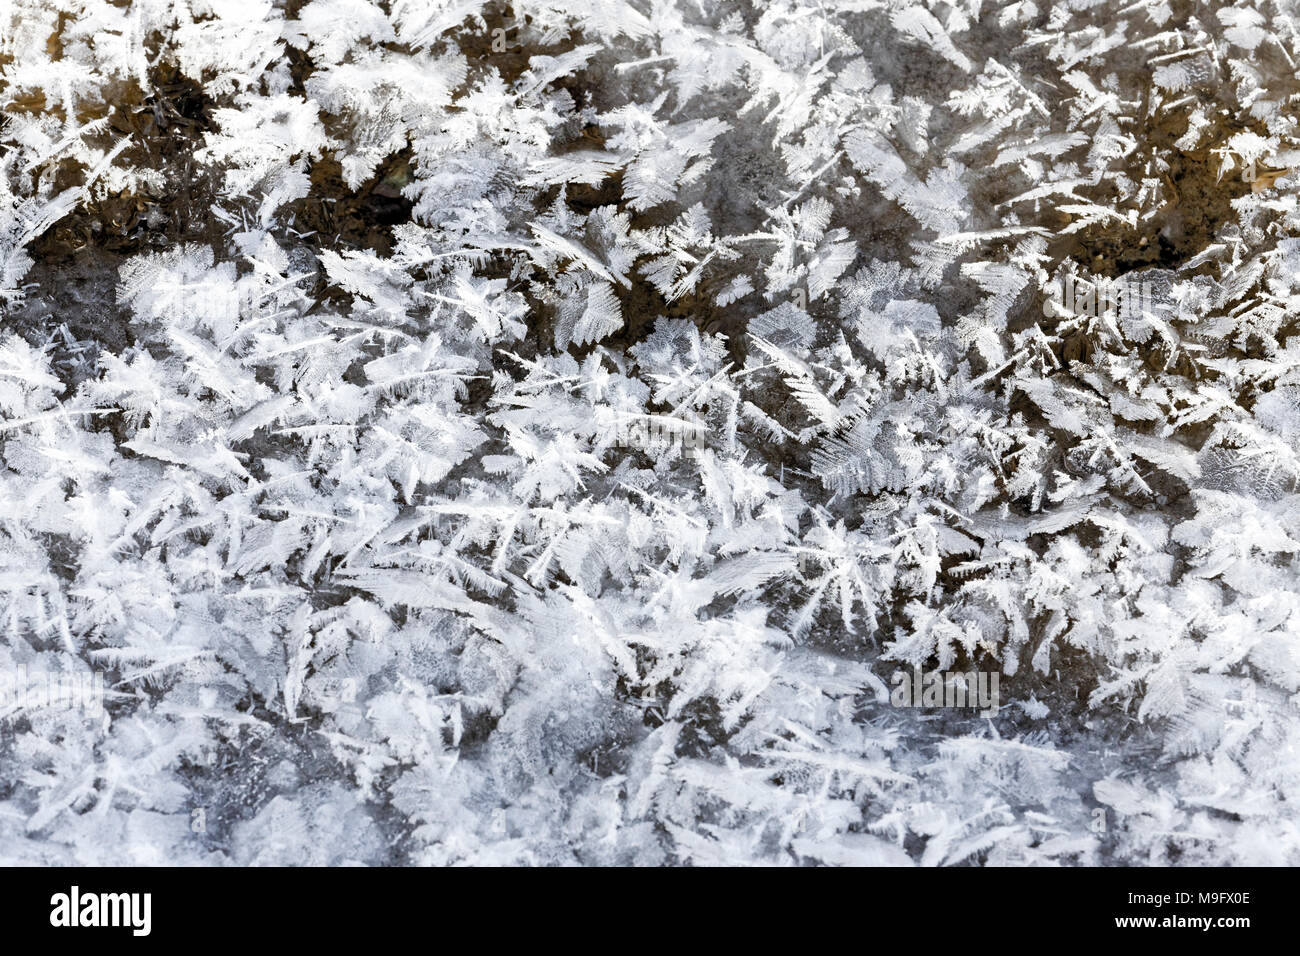 42,748.08667 in der Nähe von kleinen und zarten Feder-wie Eiskristalle eingebettet in River ice Stockfoto